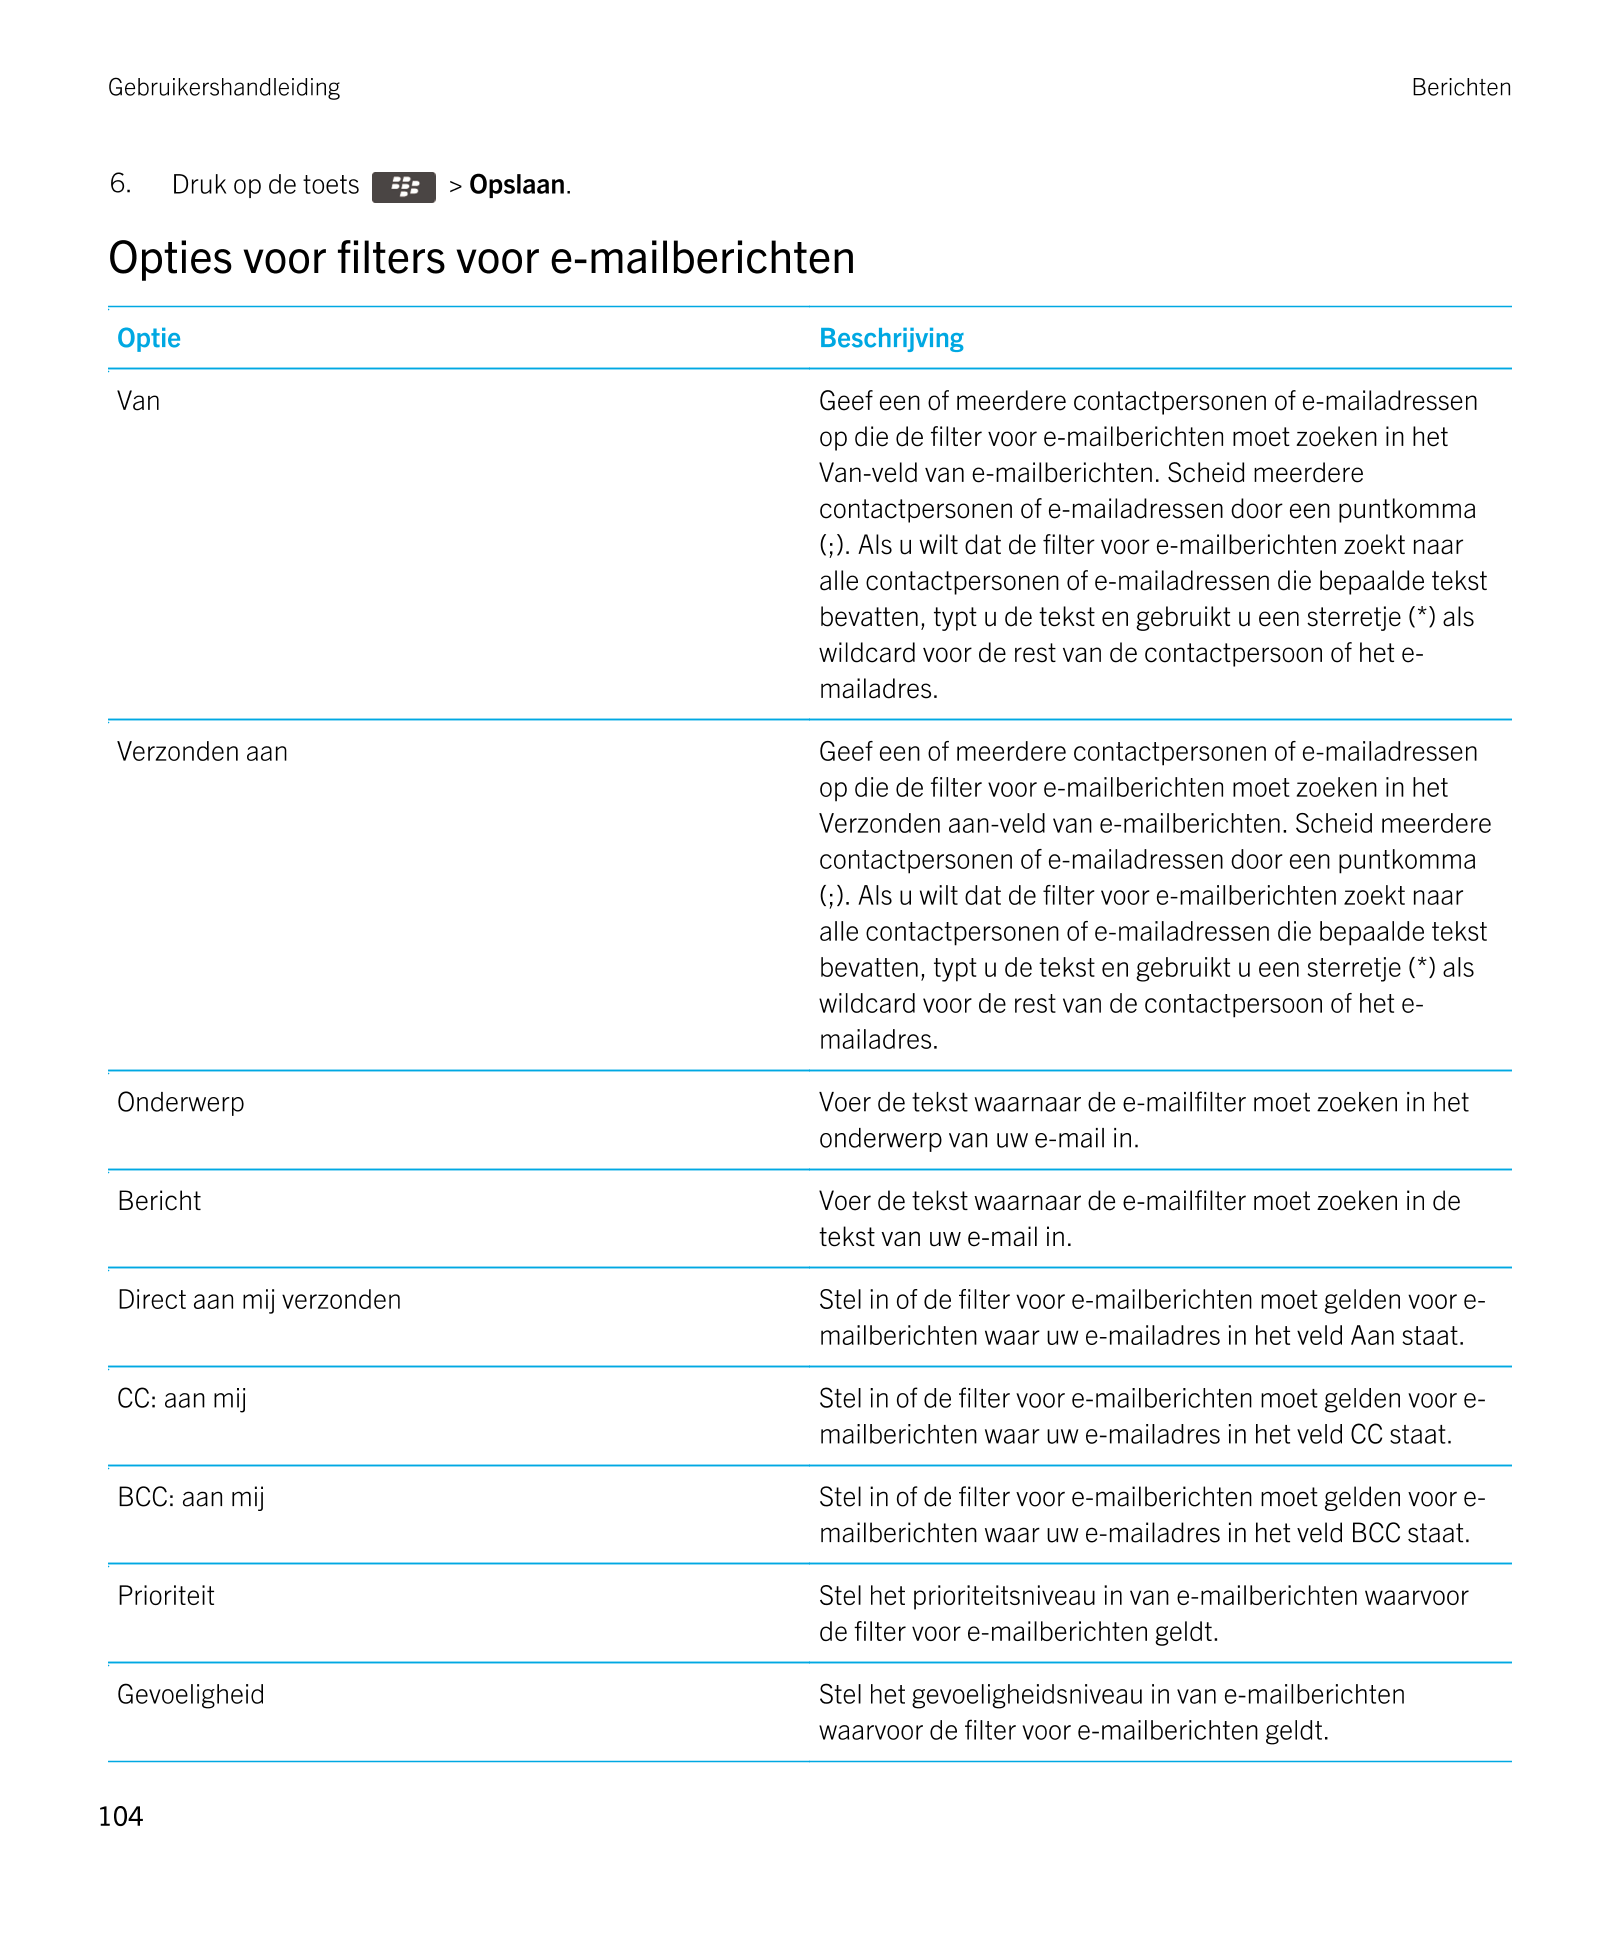 Gebruikershandleiding Berichten
6. Druk op de toets    >  Opslaan. 
Opties voor filters voor e-mailberichten
Optie Beschrijving
